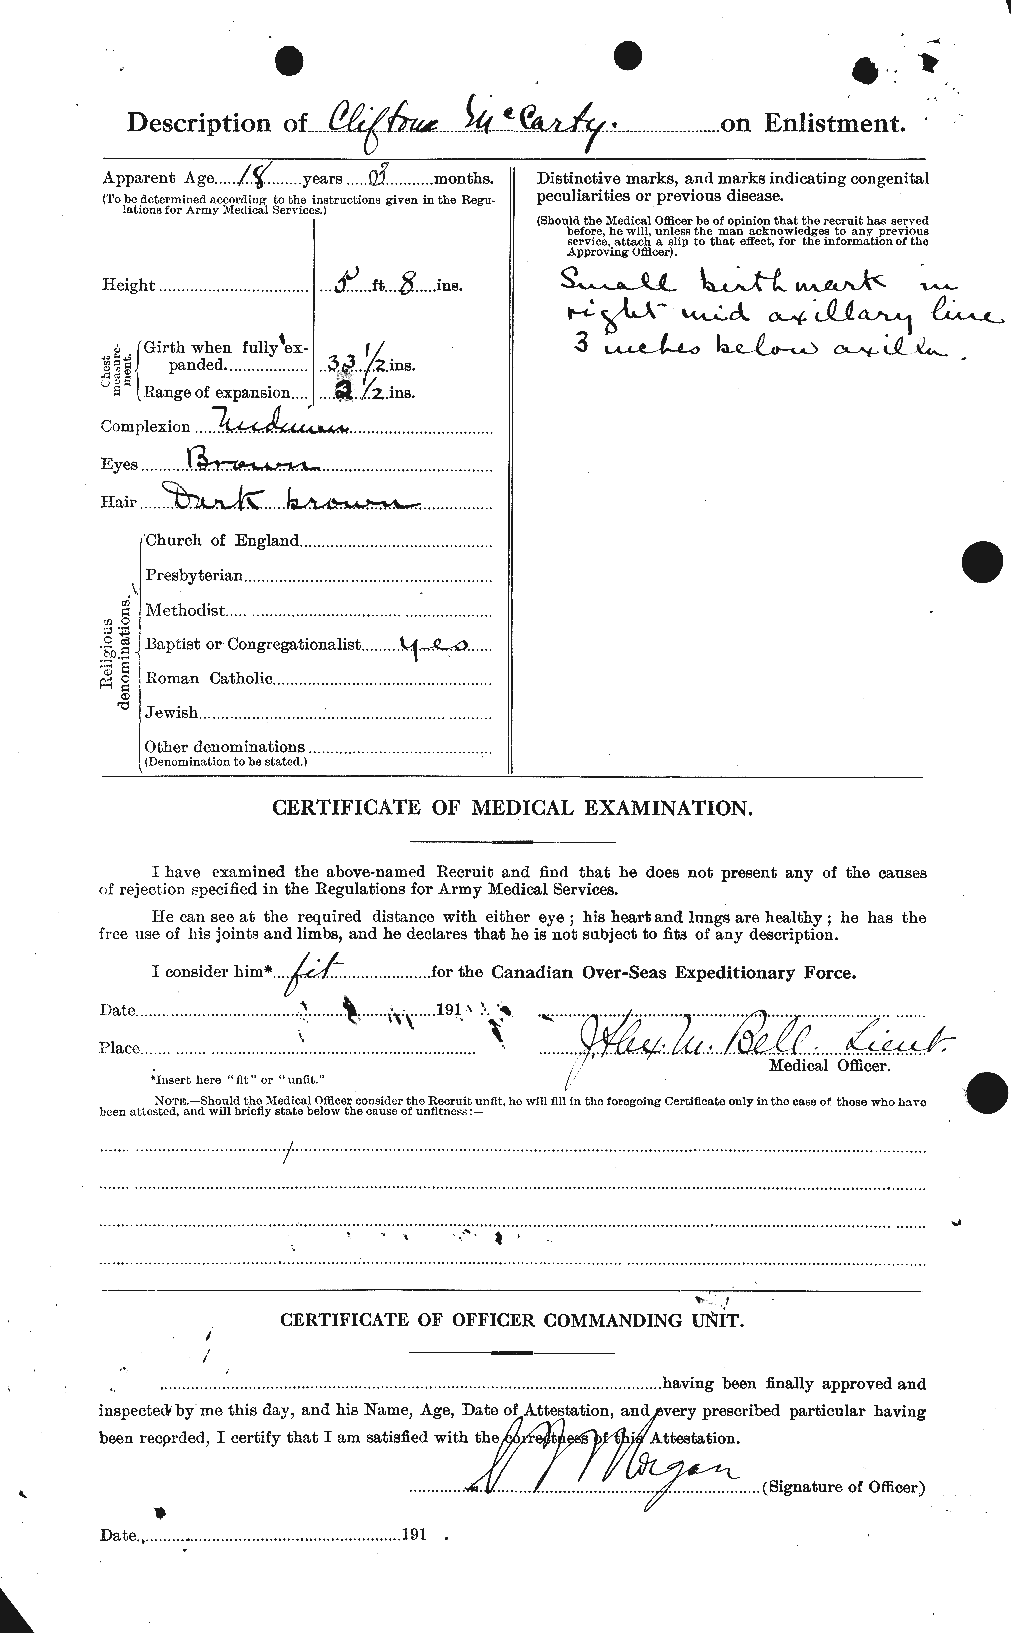 Dossiers du Personnel de la Première Guerre mondiale - CEC 133514b